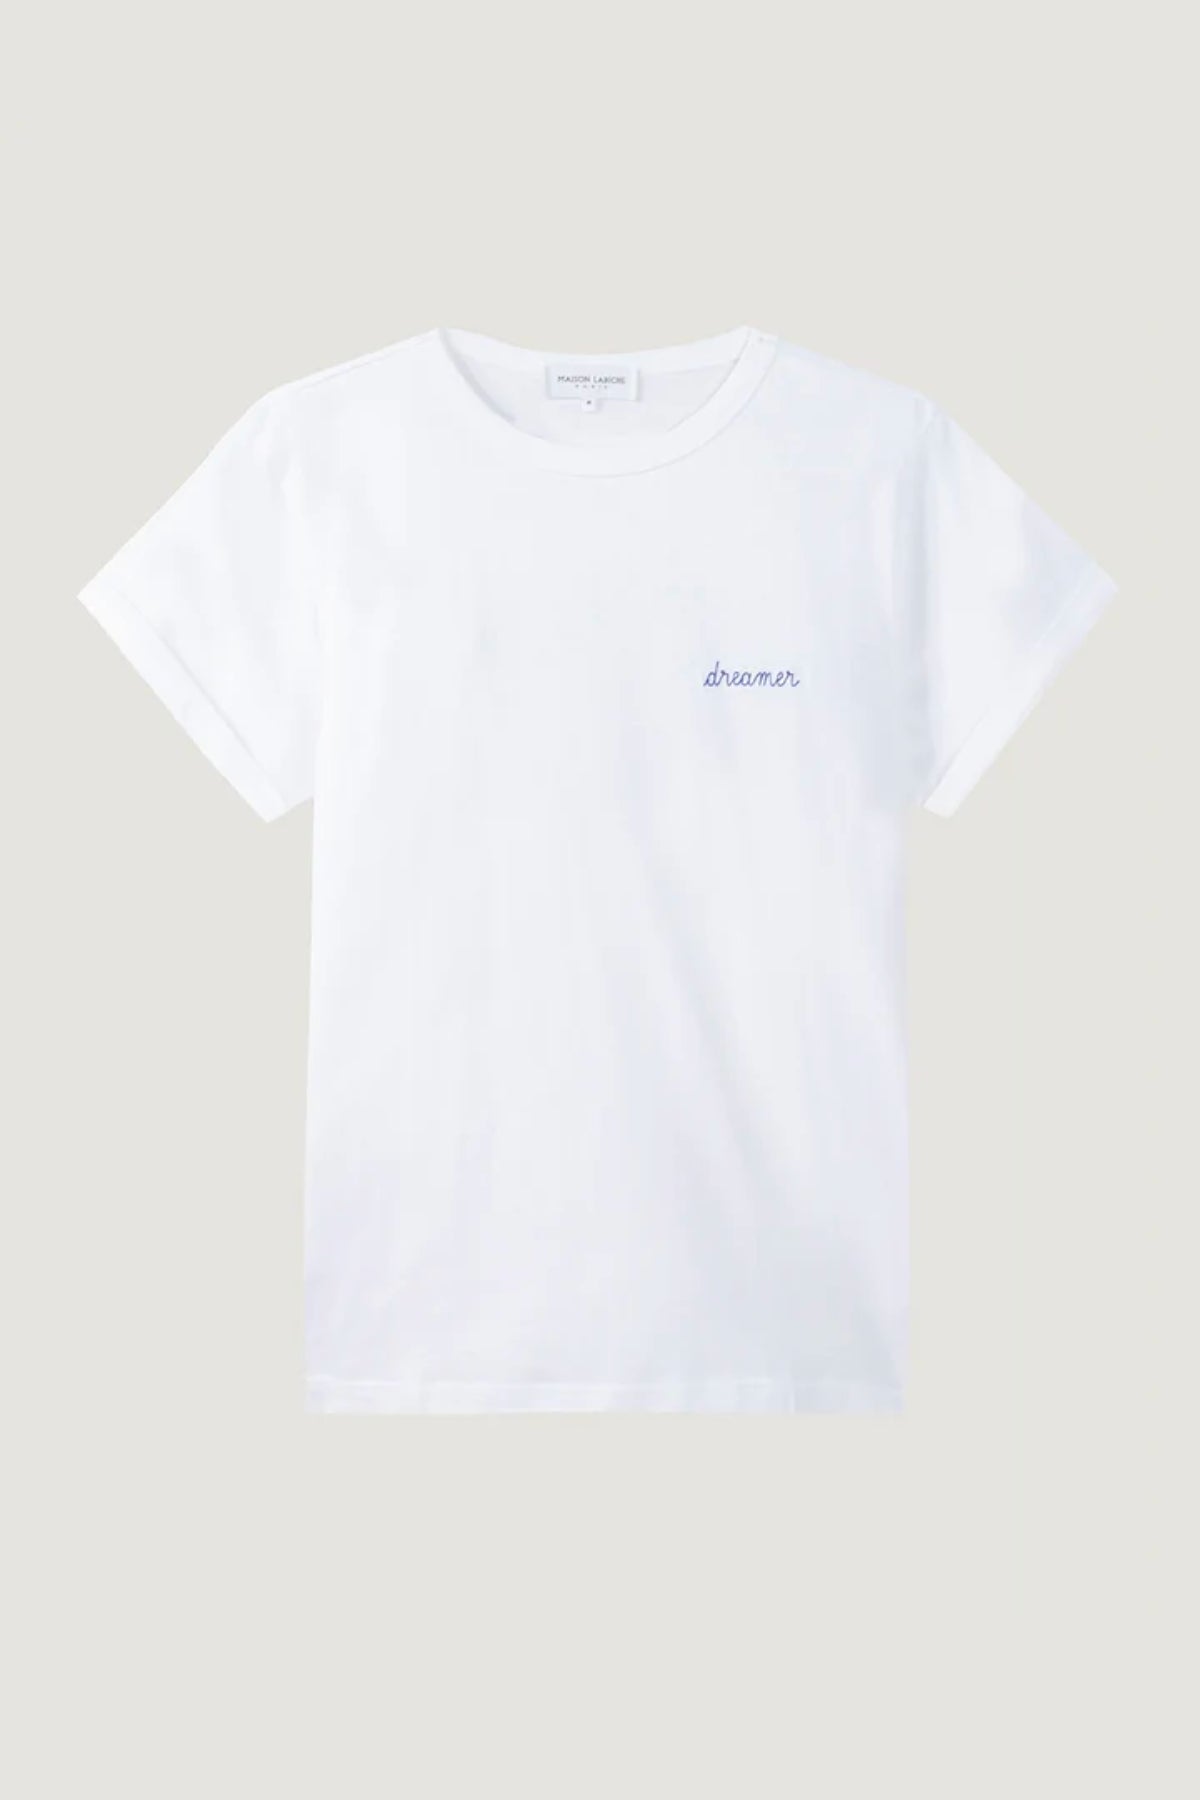 T-shirt poitou Dreamer - Maison Labiche